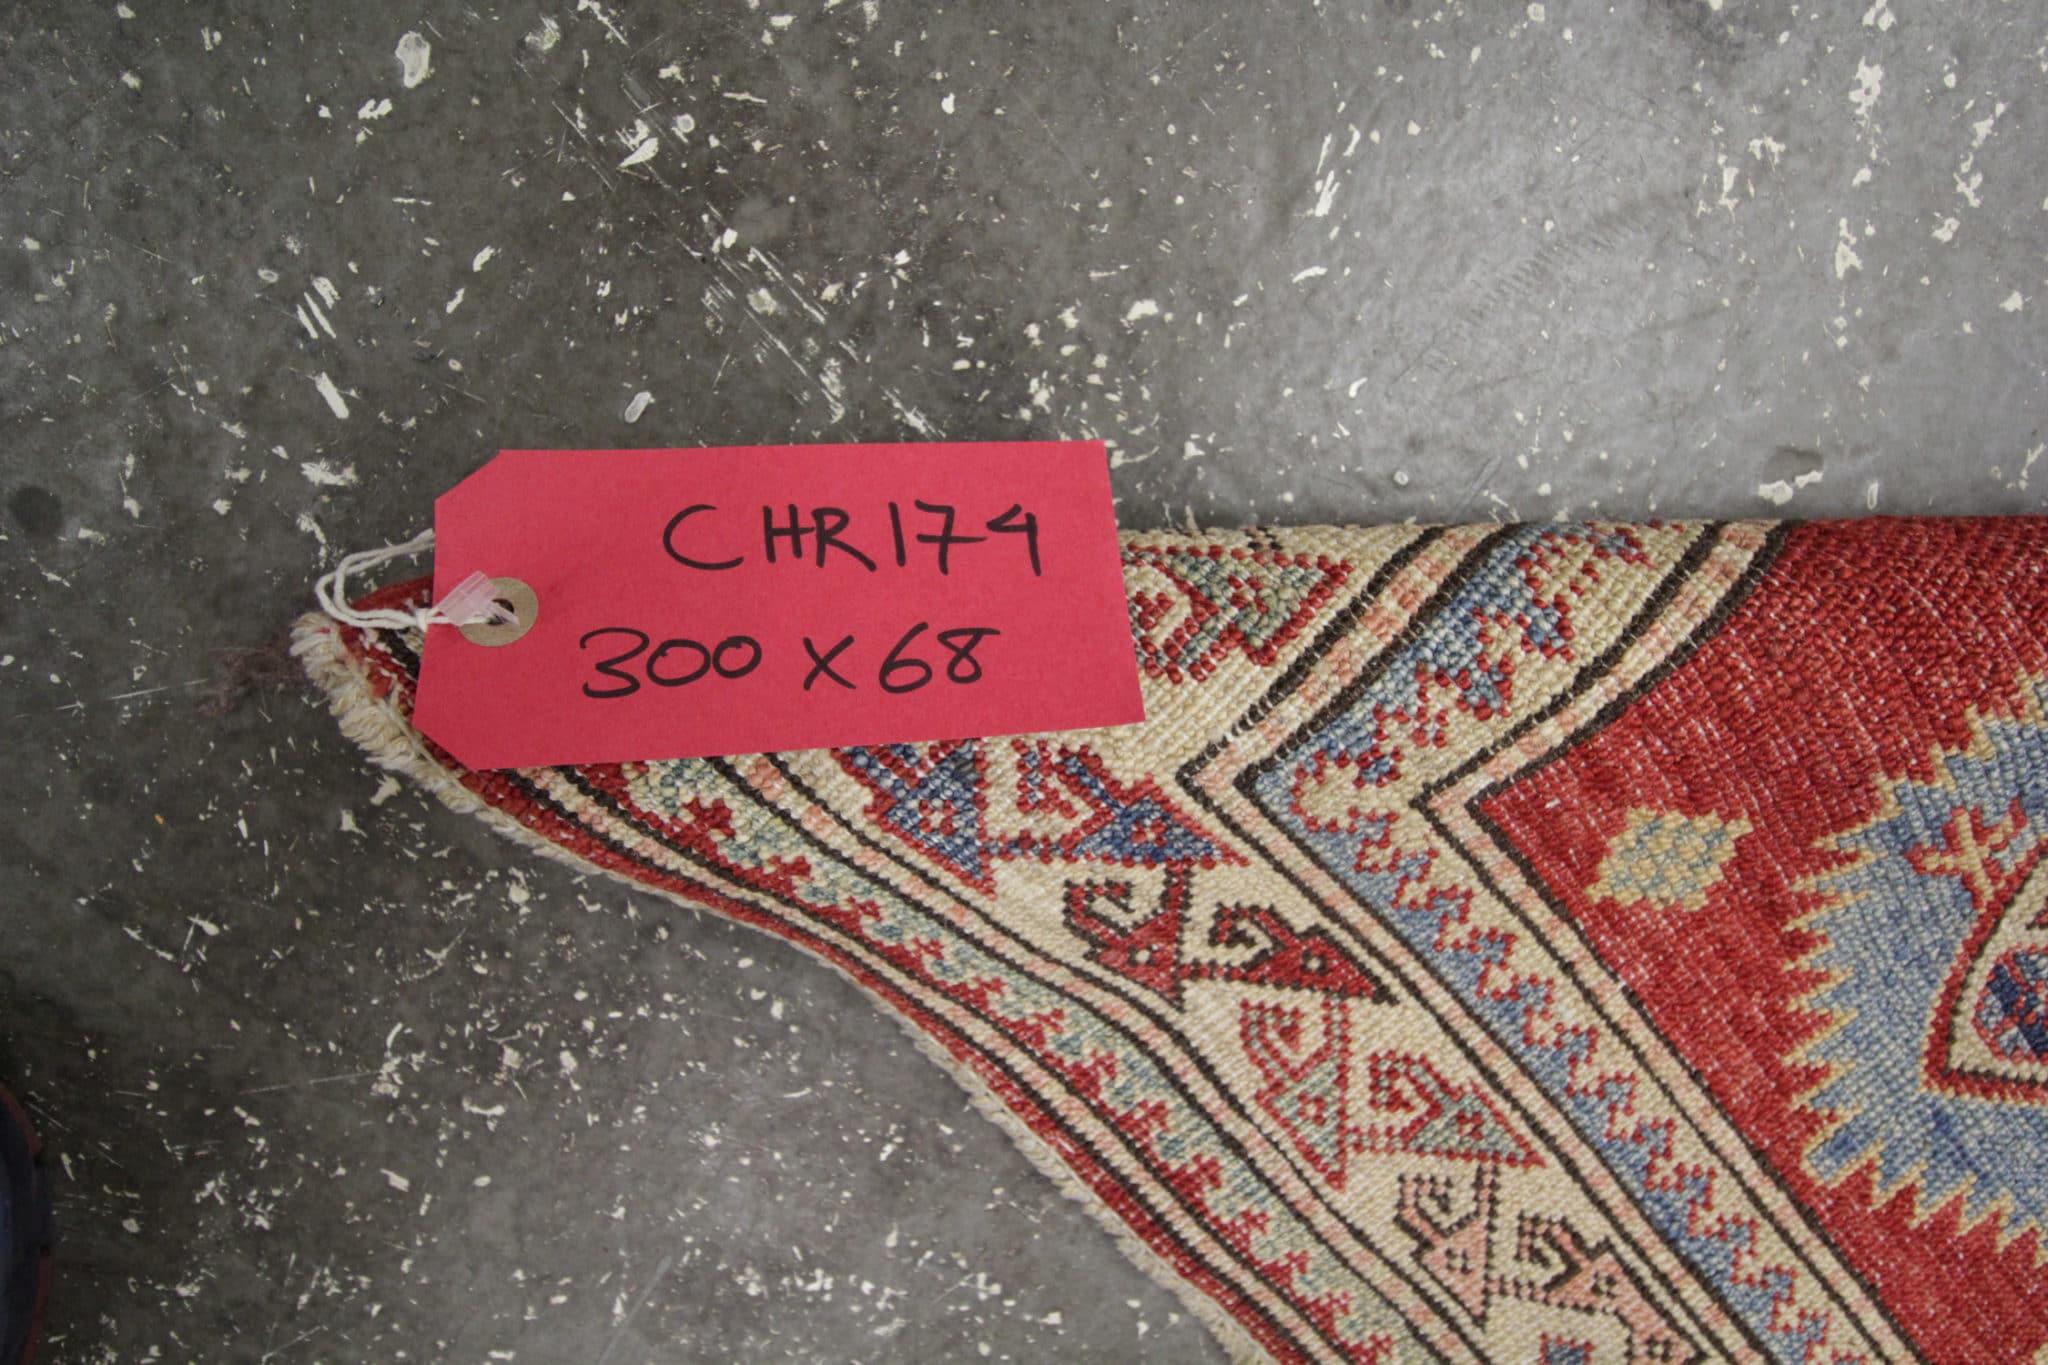 Erleben Sie den zeitgenössischen Charme unseres neuen traditionellen Teppichs, der in Afghanistan in sorgfältiger Handarbeit hergestellt wird. Dieses atemberaubende Stück mit den Maßen 300 x 68 cm (9,8 x 2,2 Fuß) ist ideal, um Ihrem Treppenhaus oder